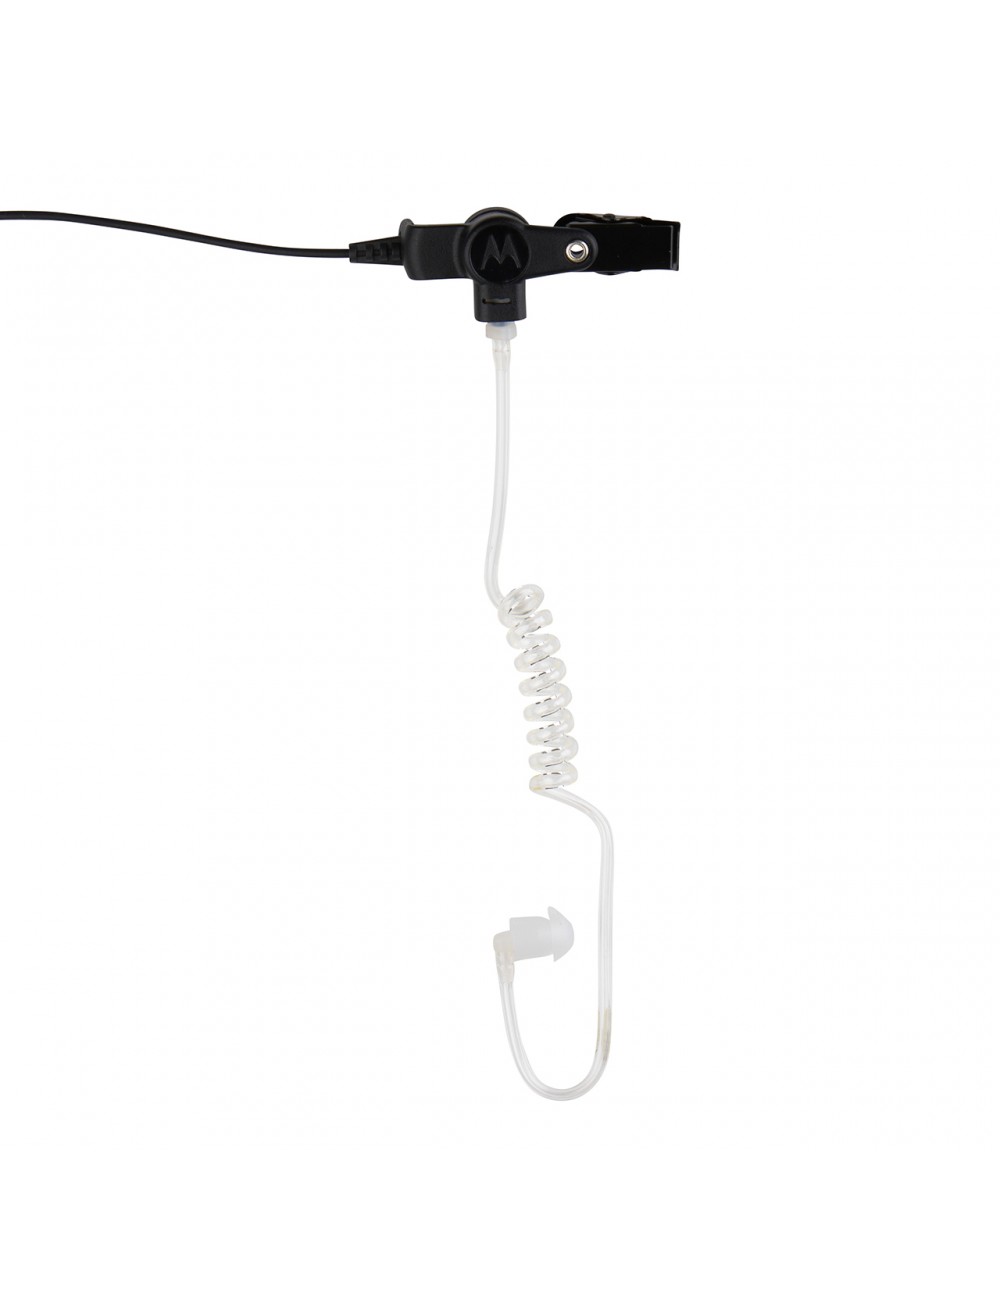 Externí sluchátko s průhledným zvukovodem a 3,5mm jackem PMLN7560A